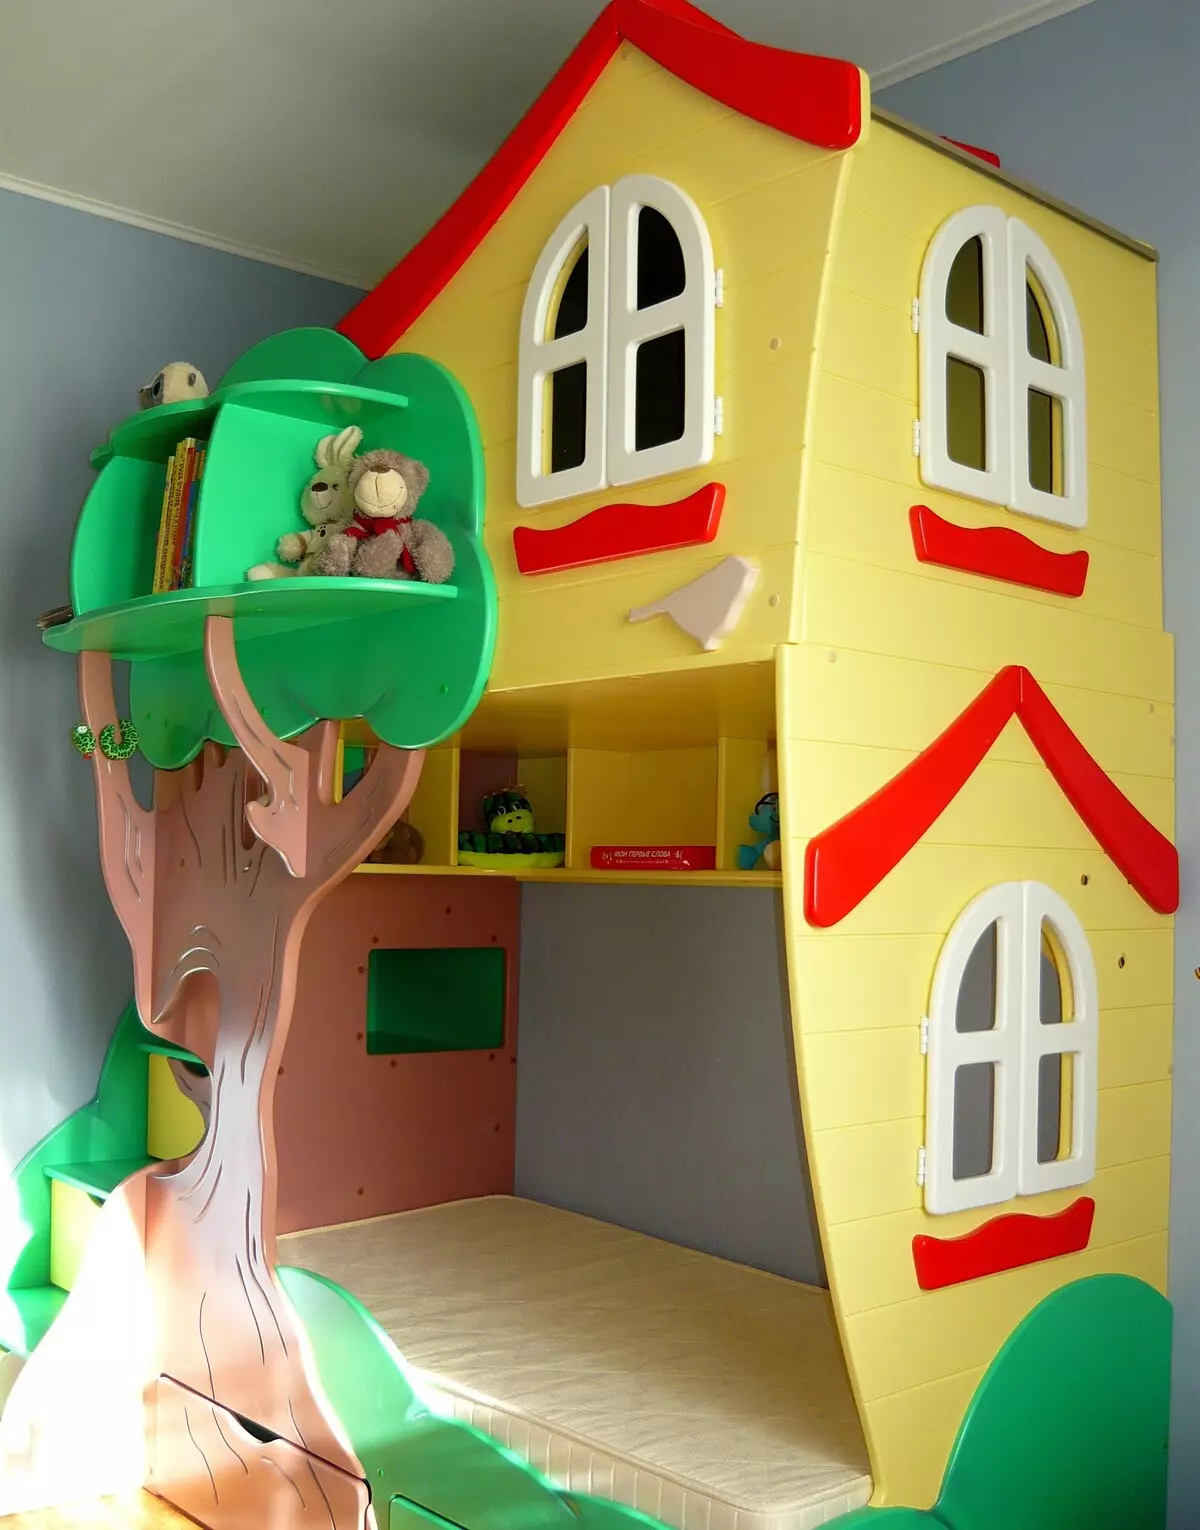 Σπίτι σε ένα δέντρο για ένα παιδί στο δωμάτιο: Είναι δυνατόν; Και πως?